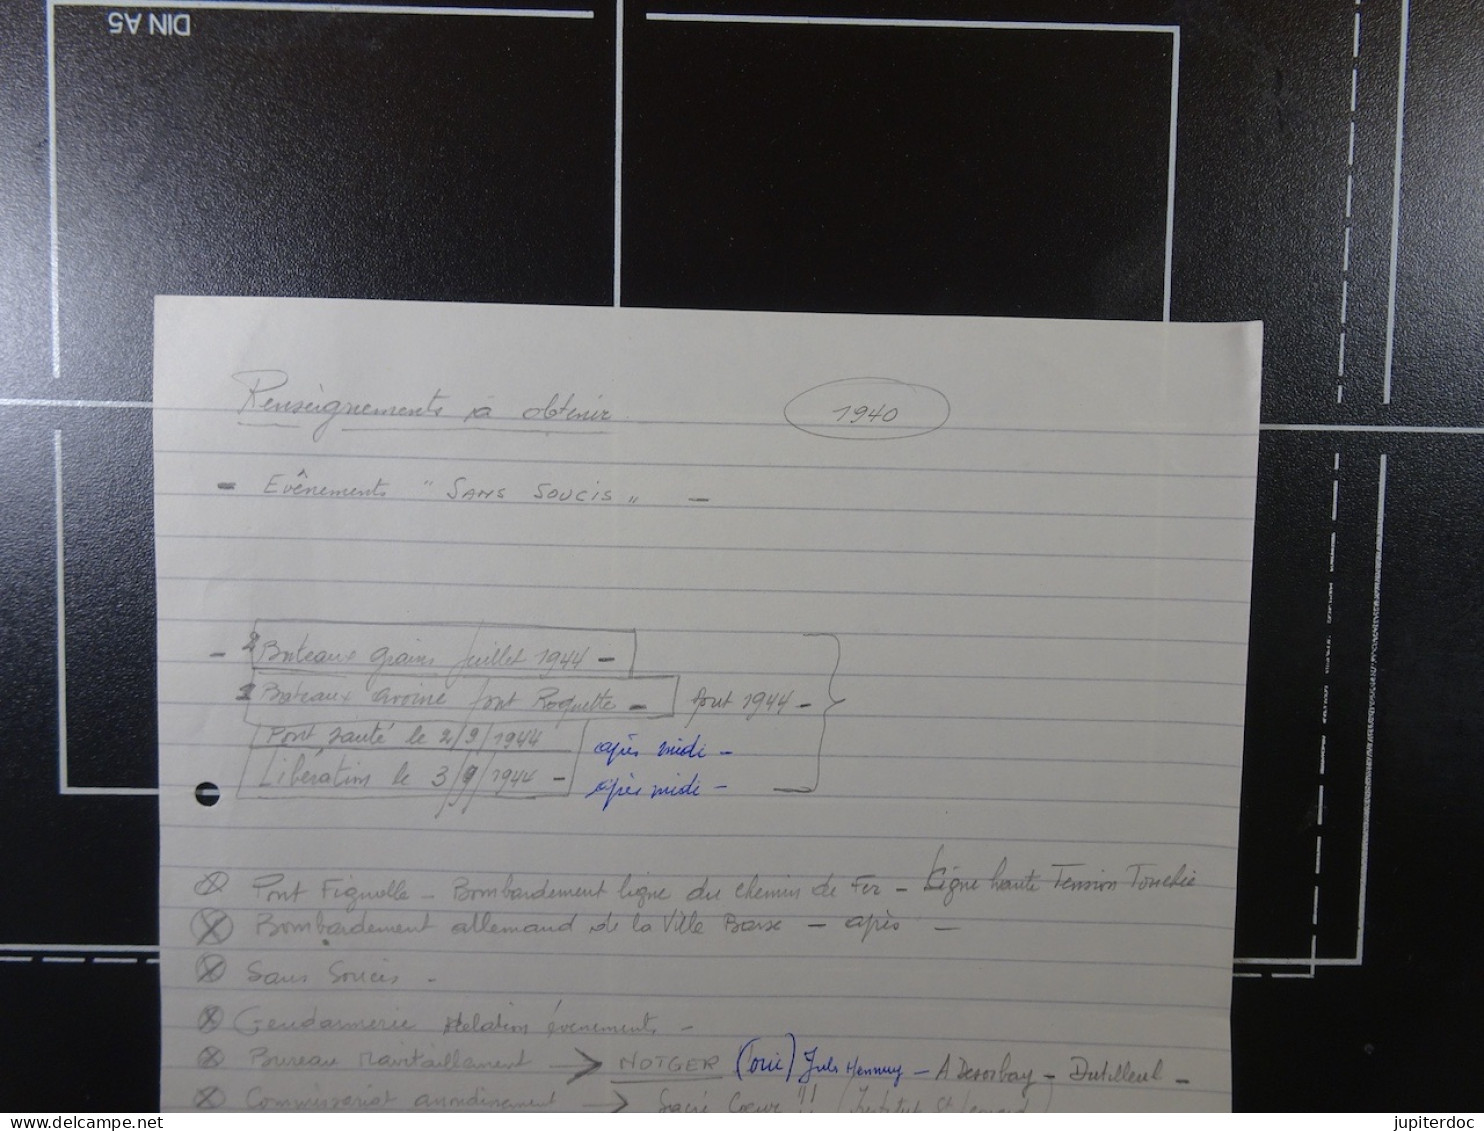 THUIN Manuscrit "Gamins Thudiniens de 1940-1944" Roger Lacomblez + Documents, sources, courriers, copies de presse